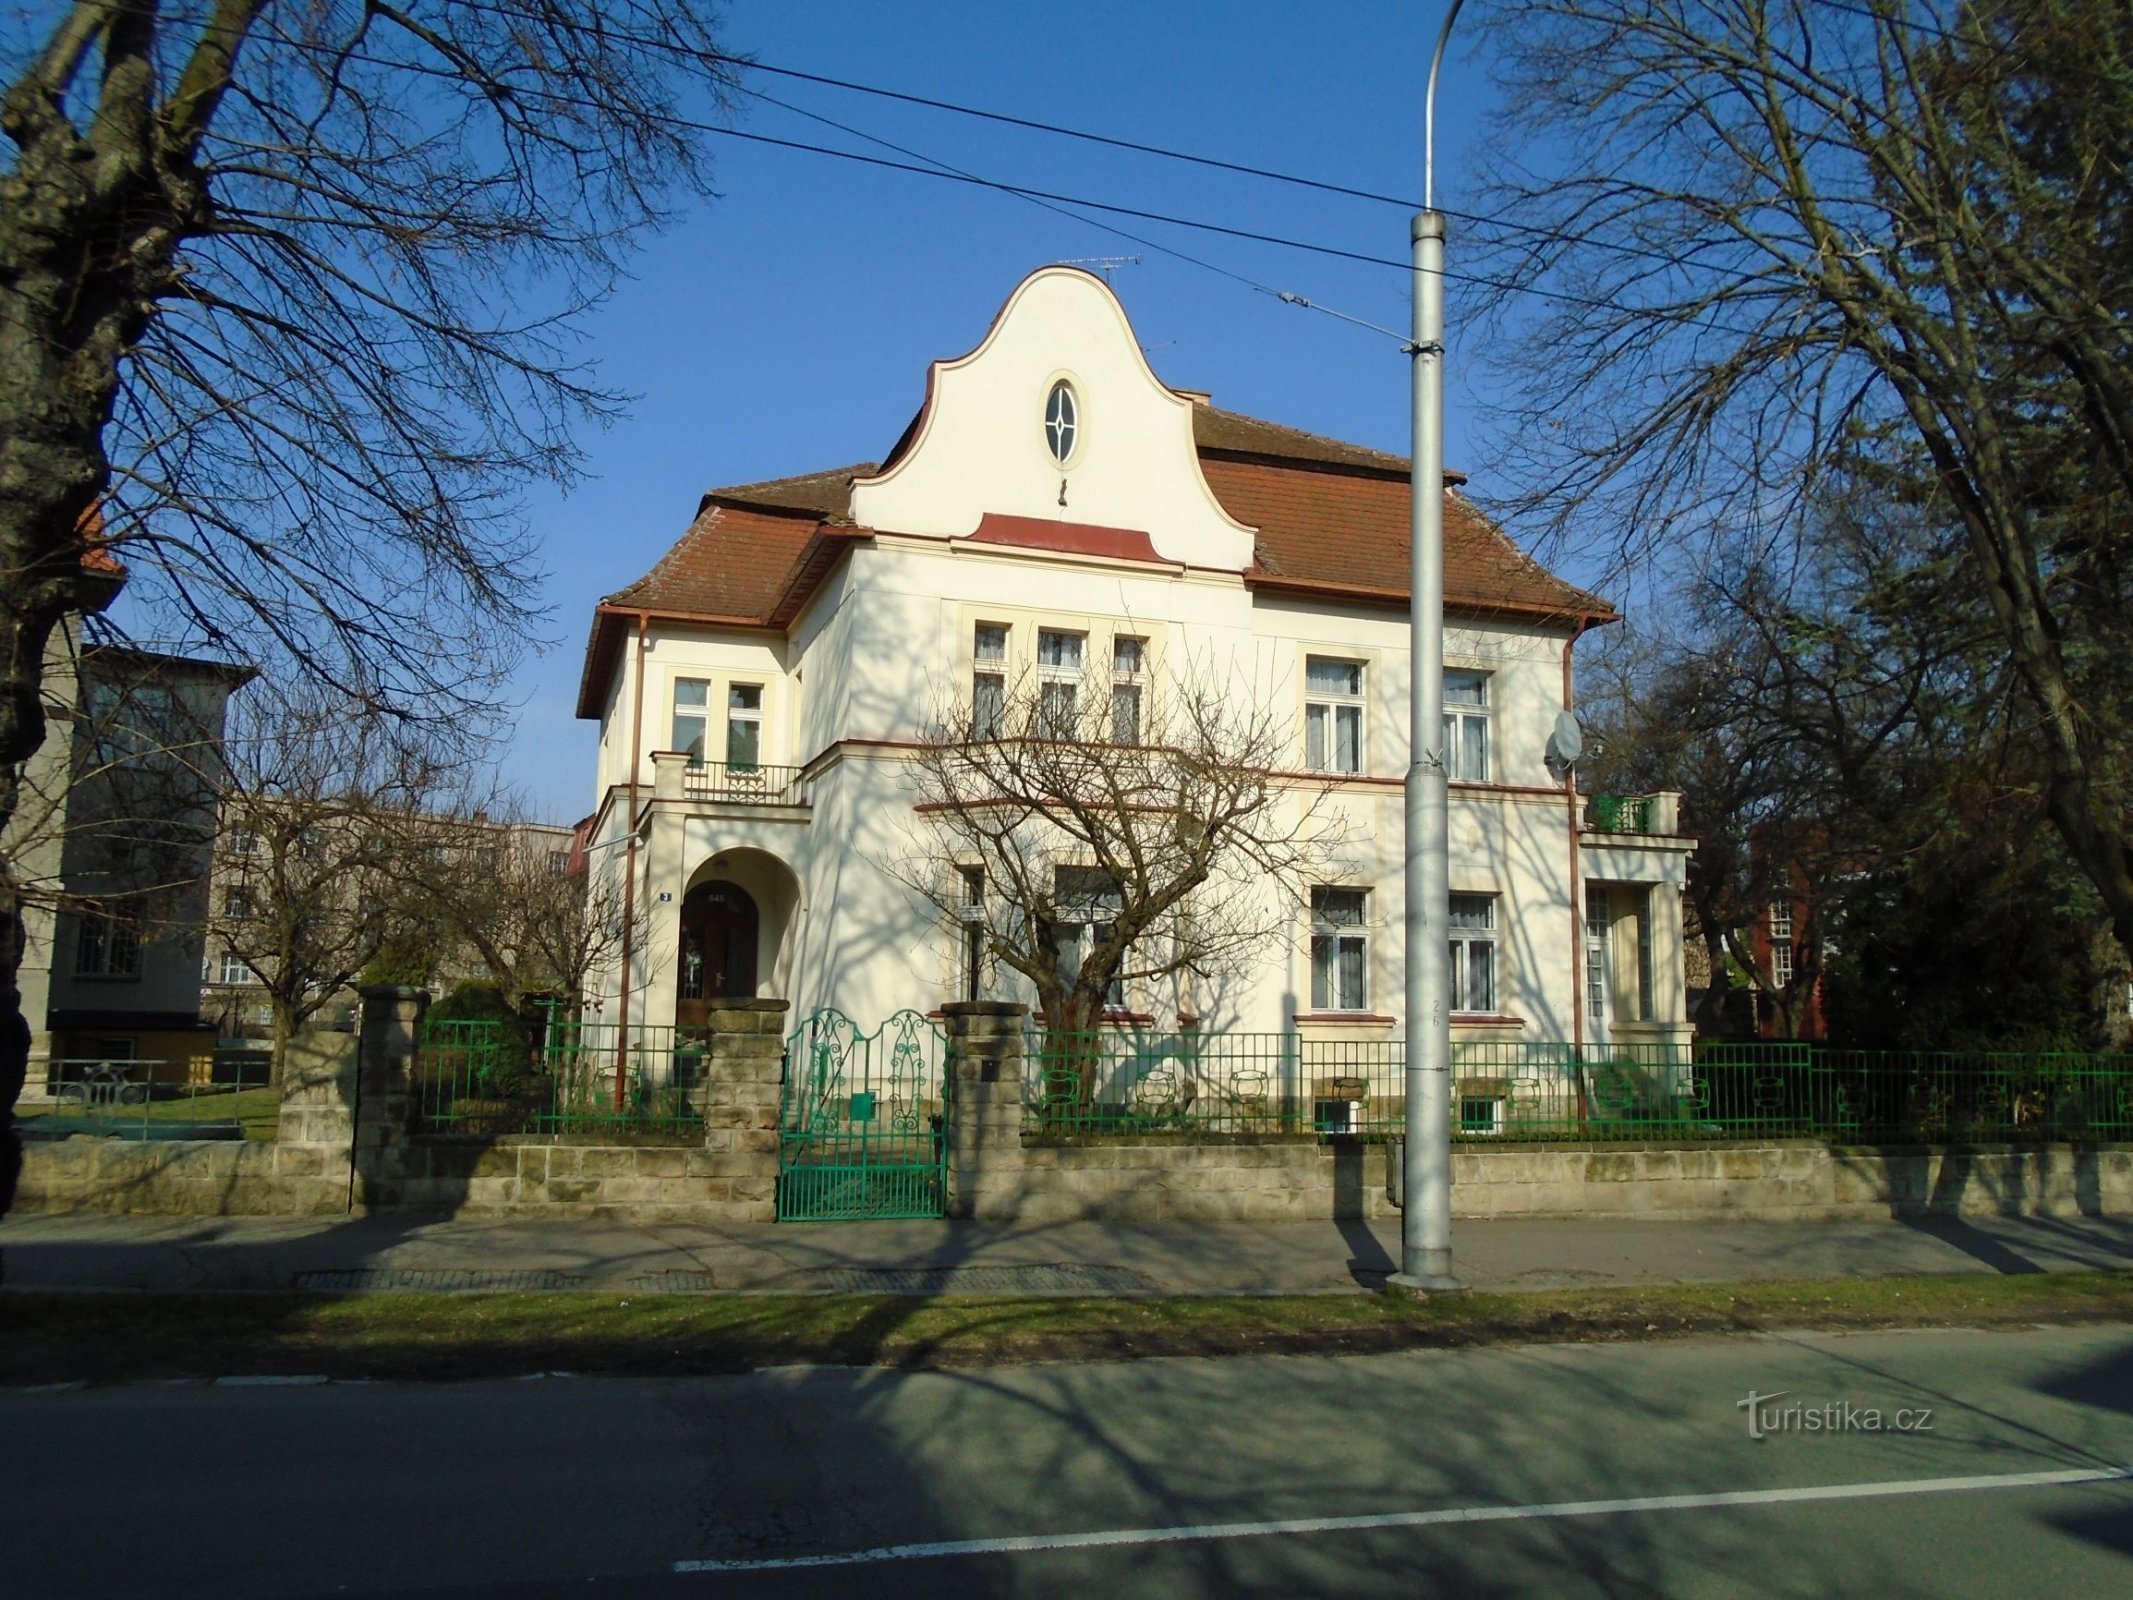 Zamek nr 545 (Hradec Králové, 1.4.2018 kwietnia XNUMX)